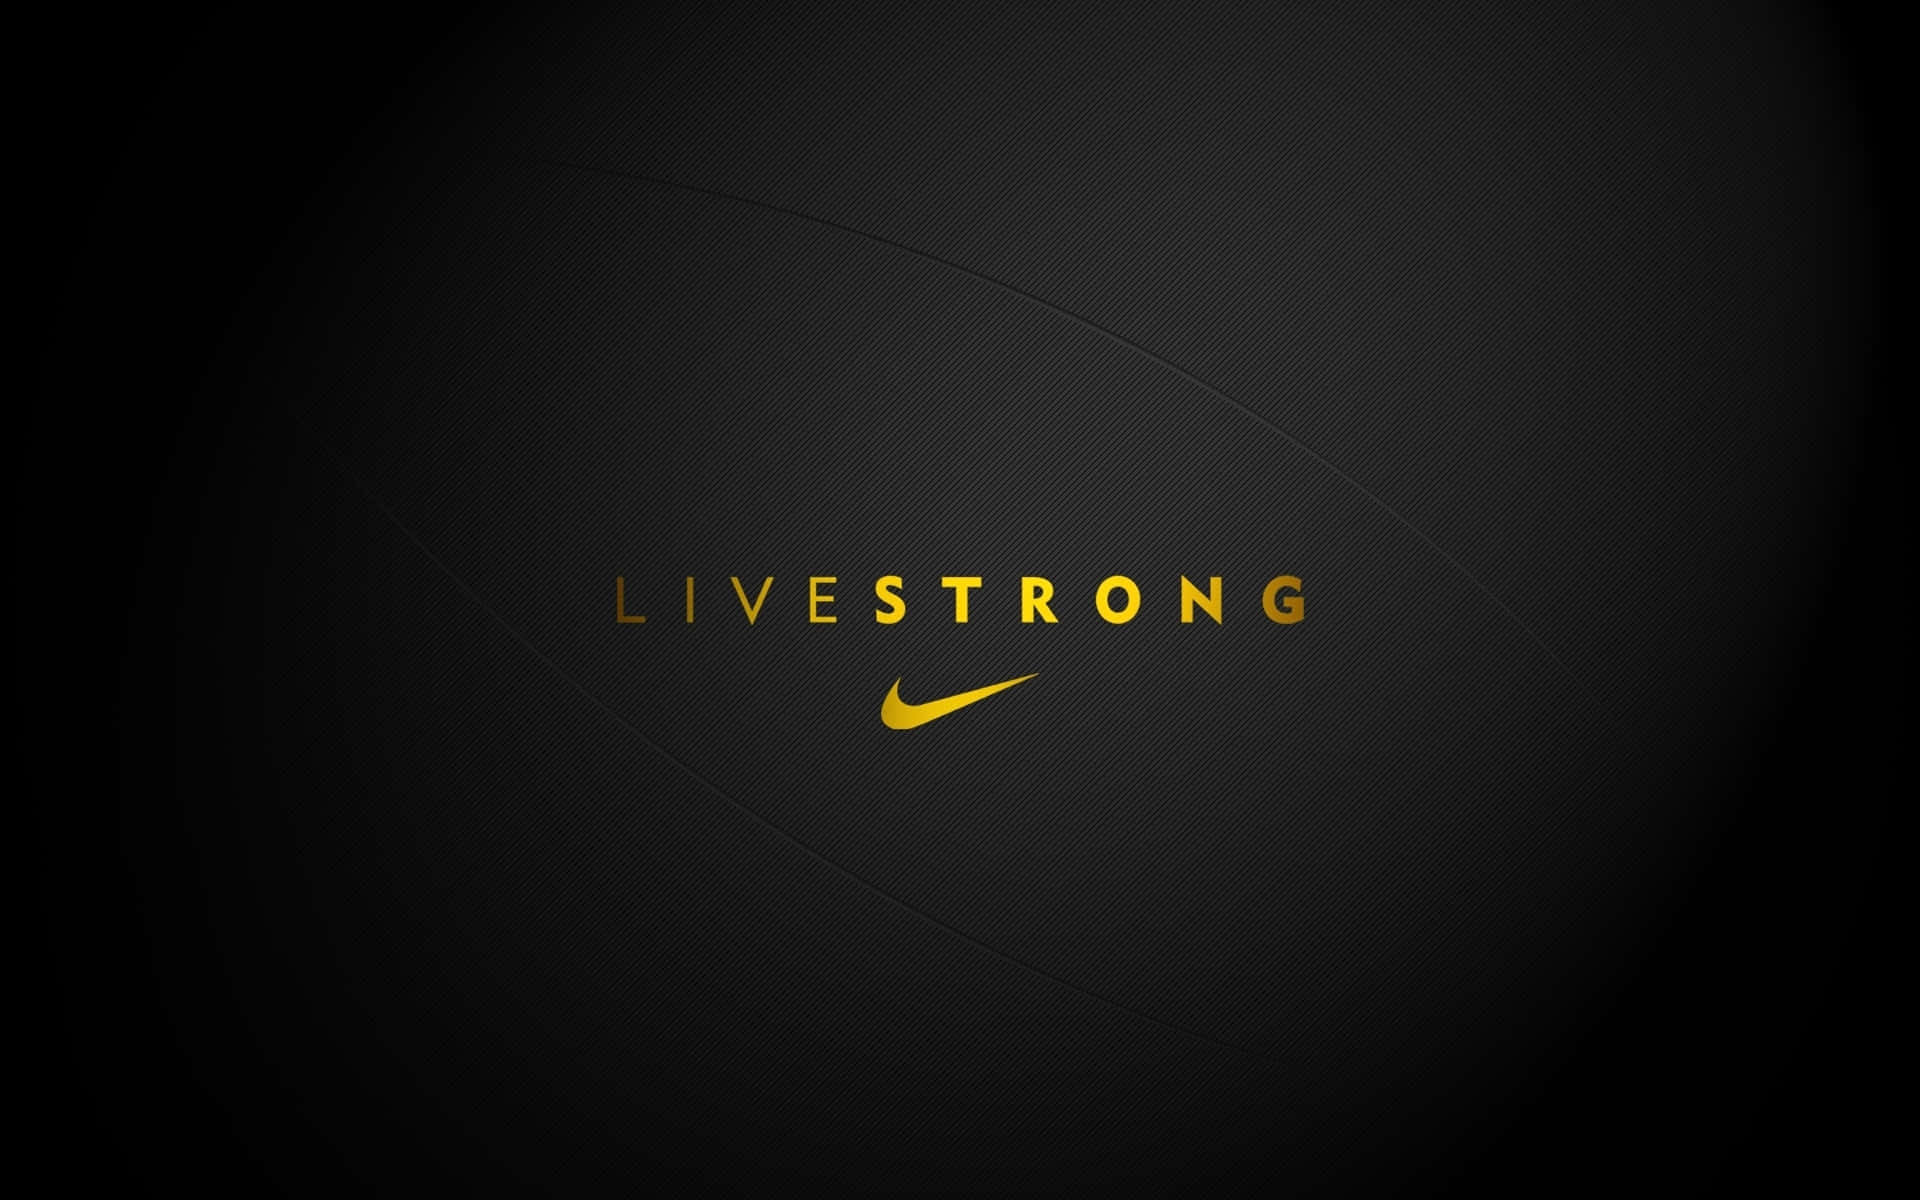 Unosguardo Allo Iconico Logo Swoosh Di Nike.